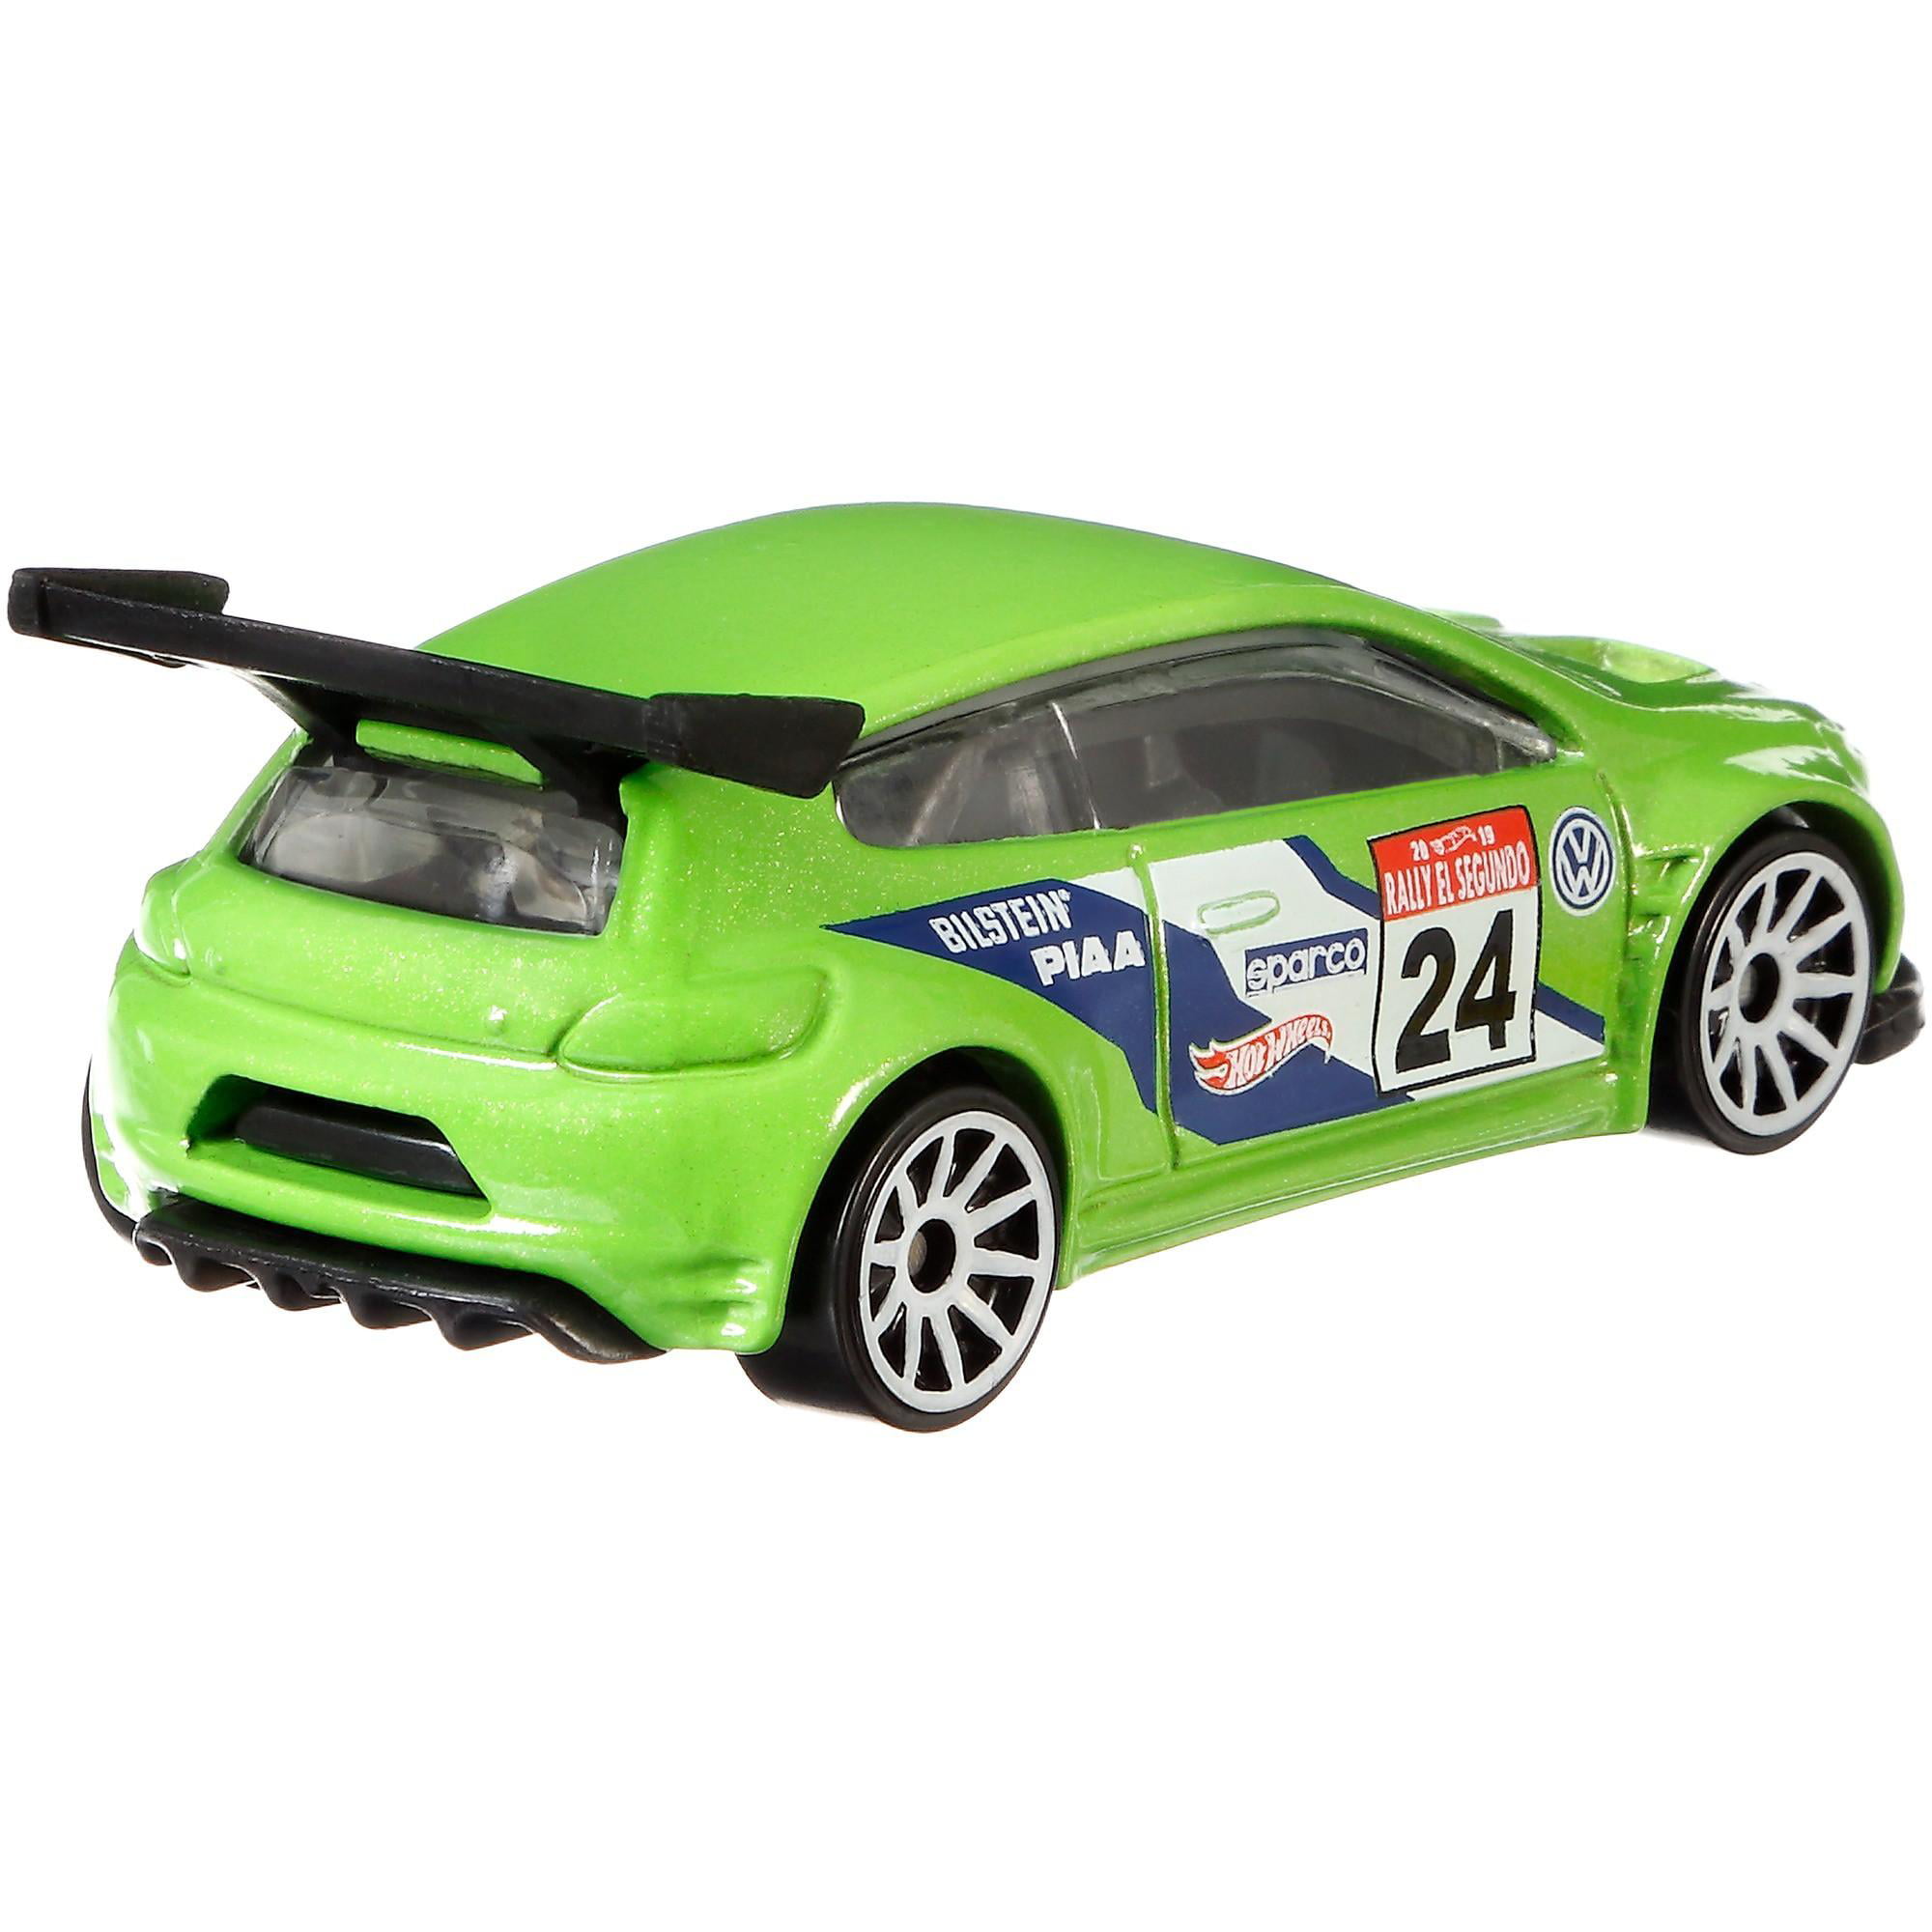 Hot Wheels VOLKSWAGEN Scirocco Gt24 Green Rally Racing 1/64 for sale online